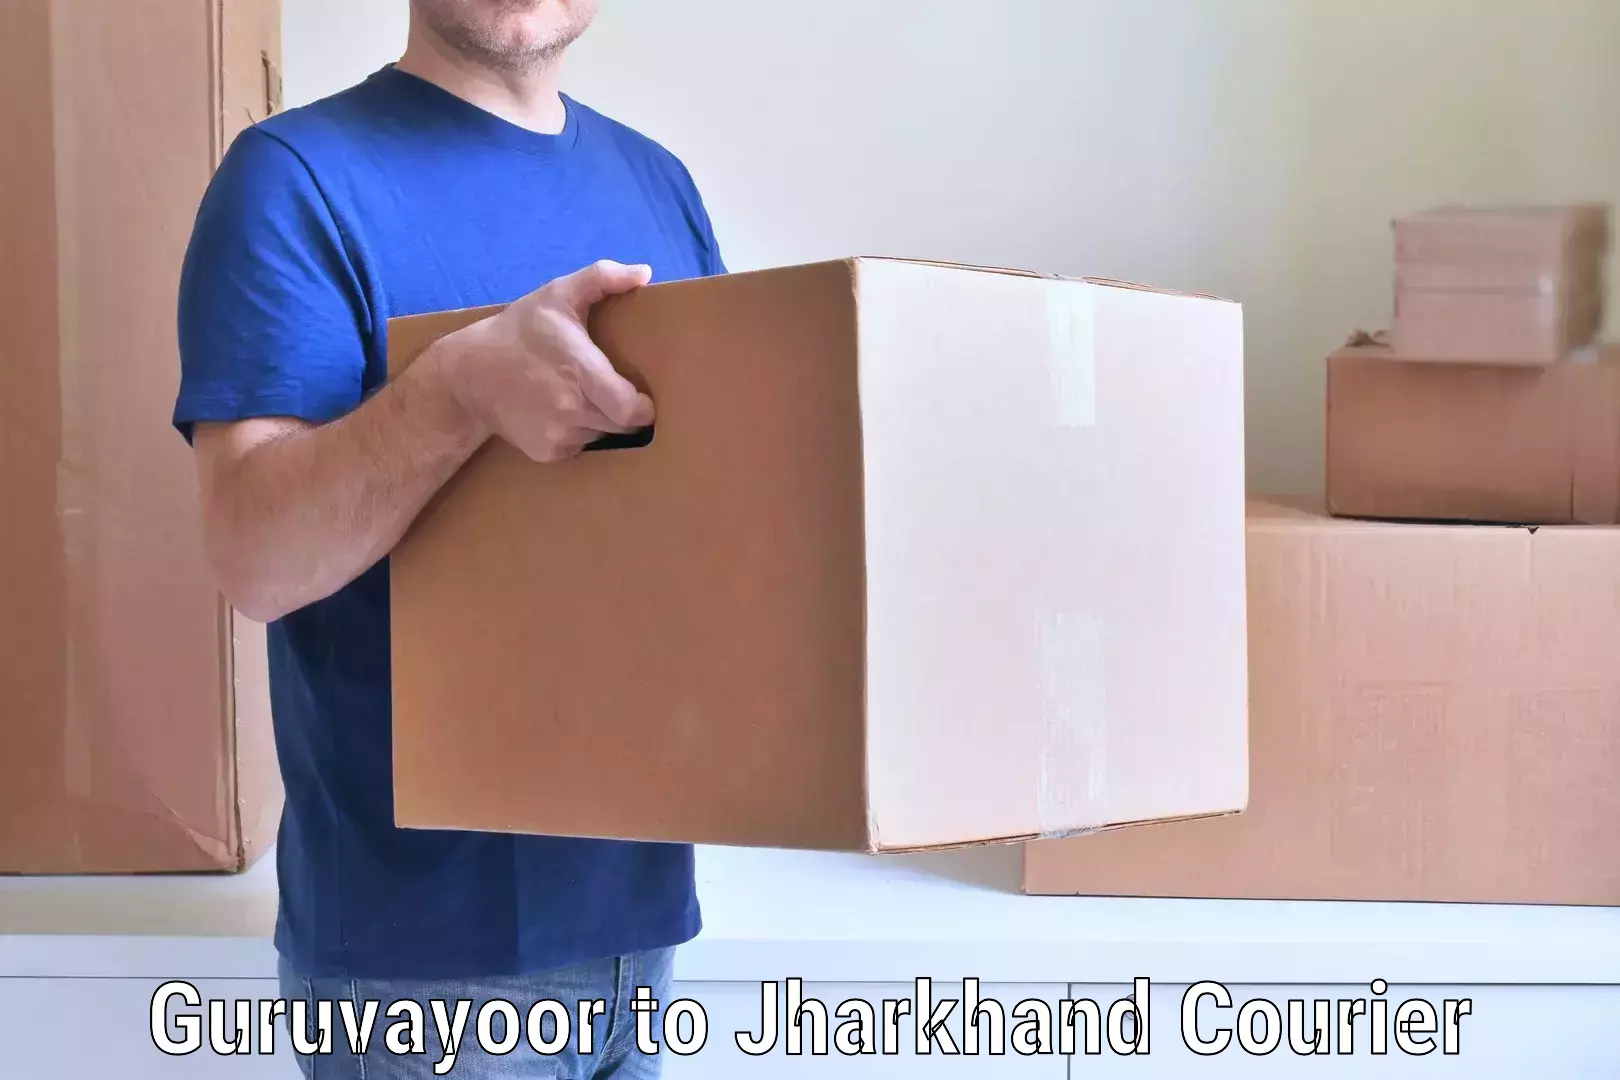 Residential moving experts Guruvayoor to Chandankiyari